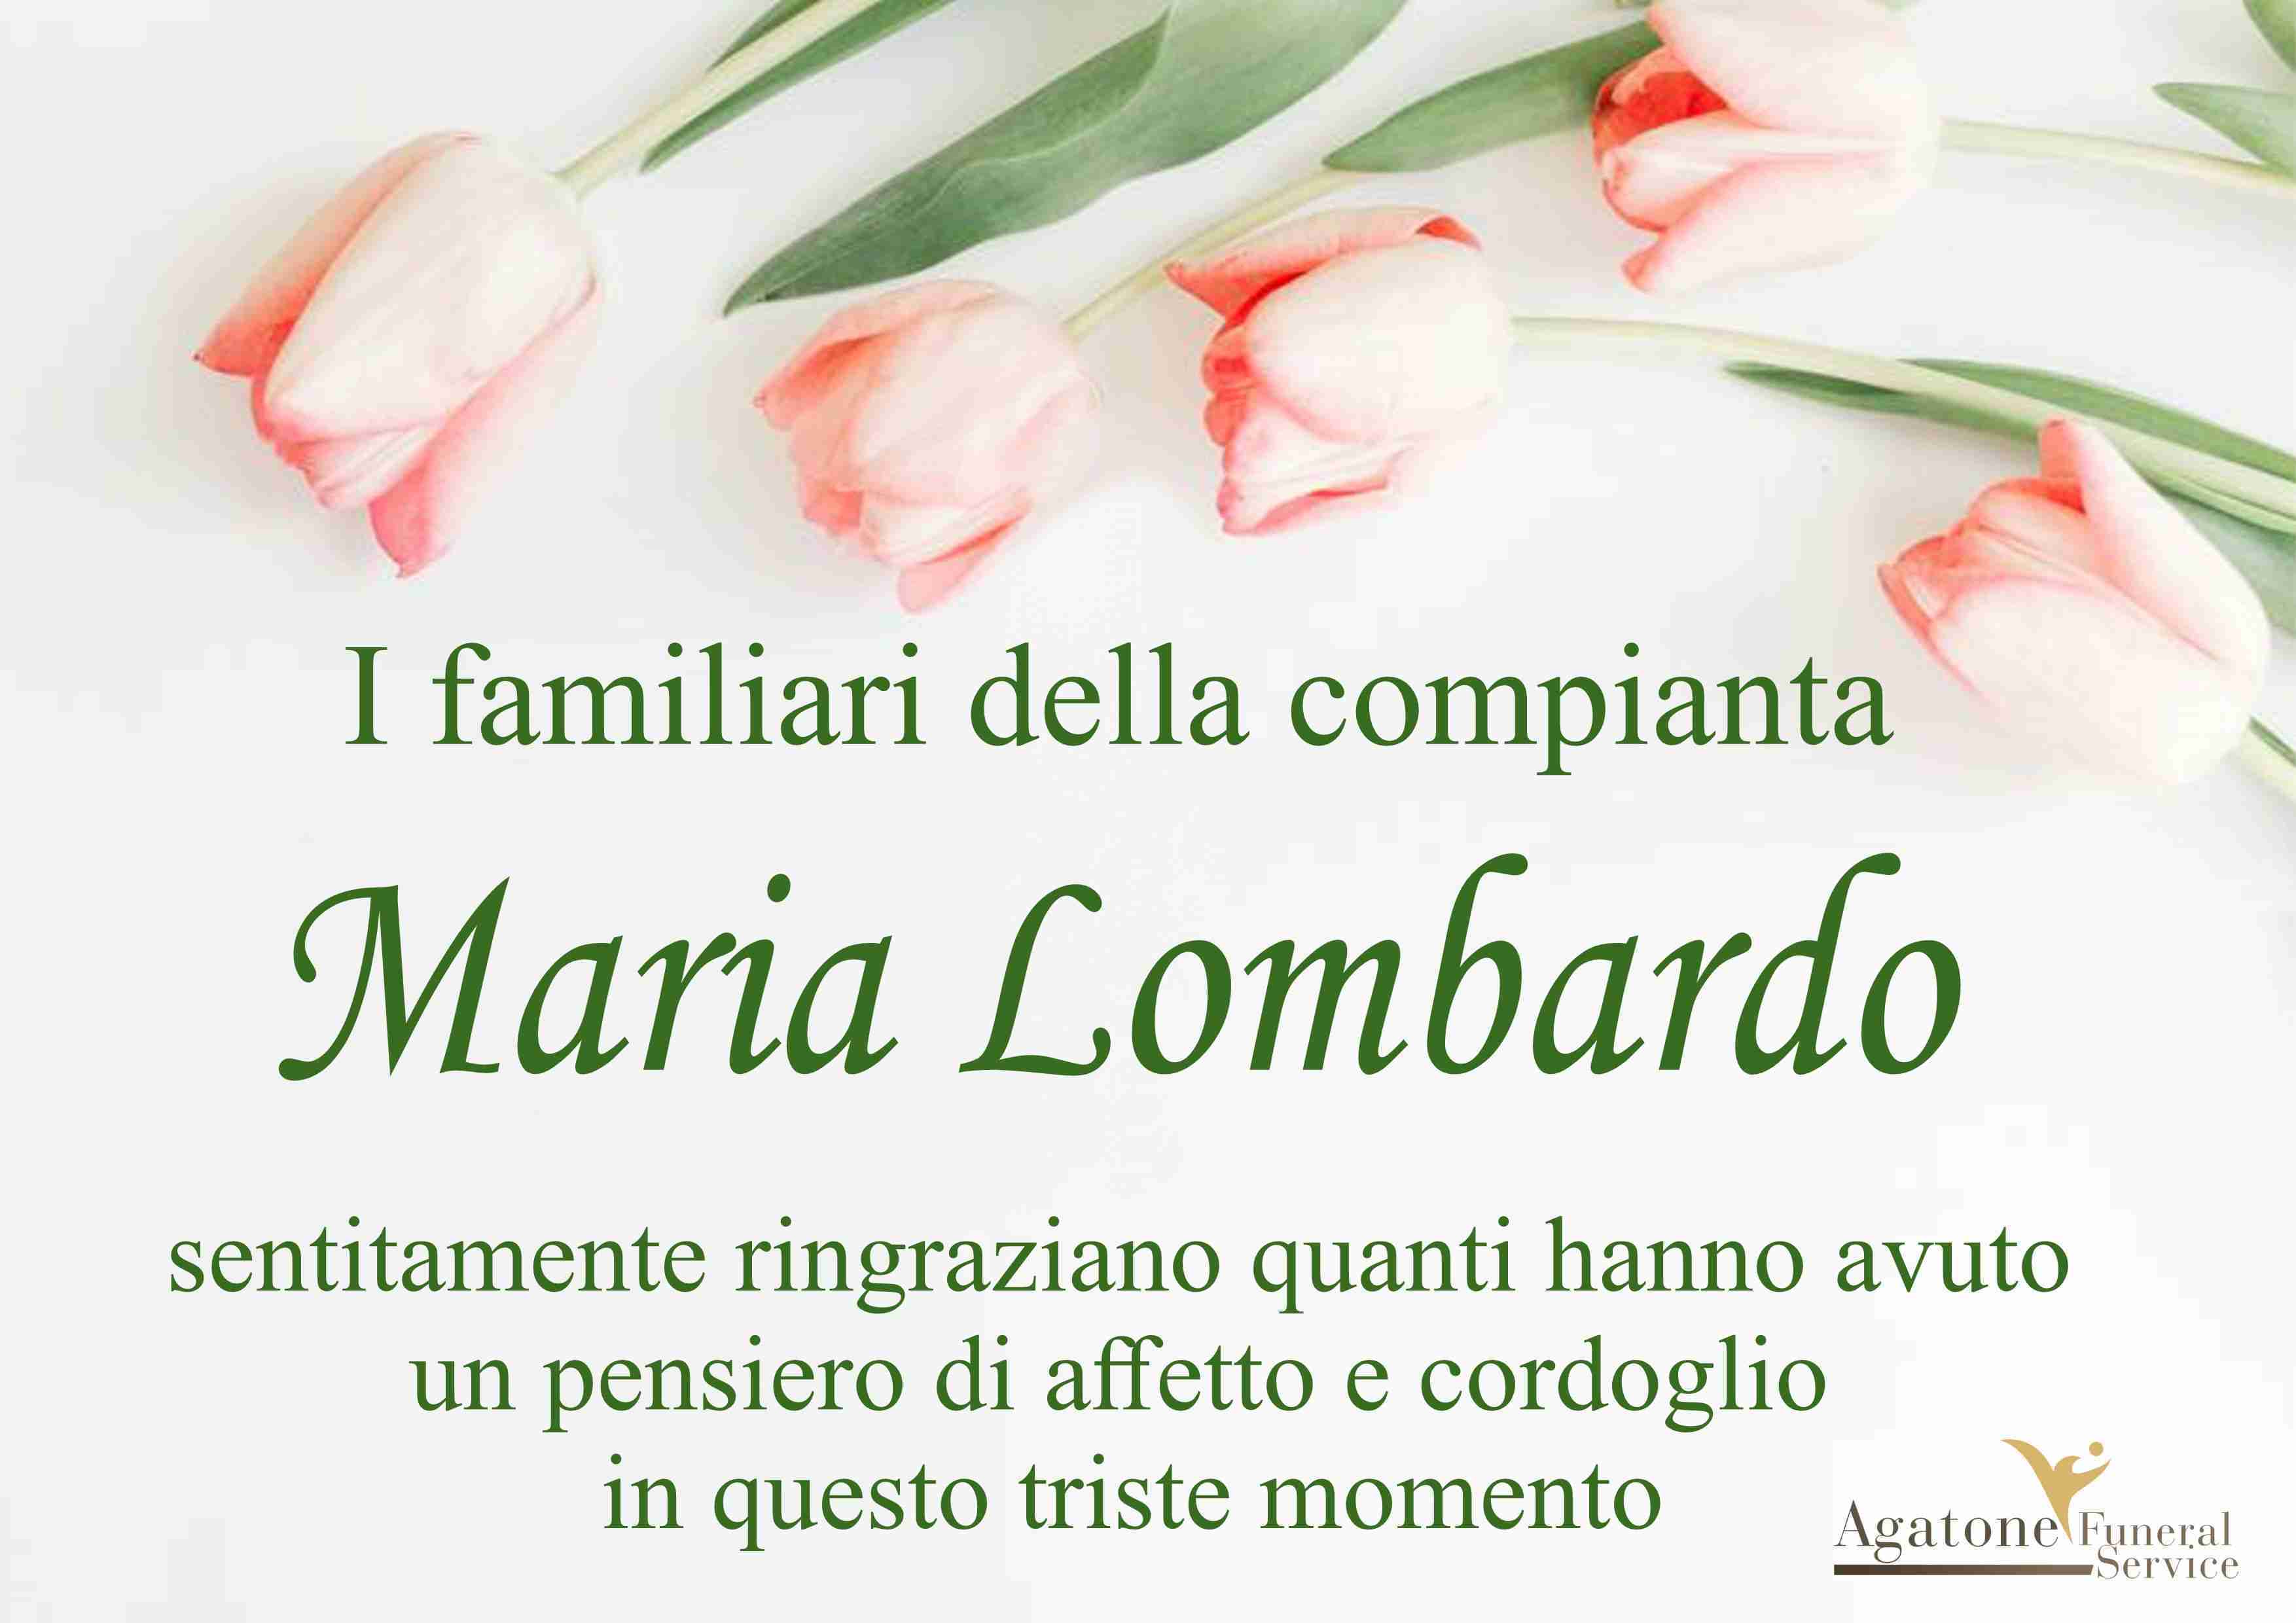 Maria Lombardo